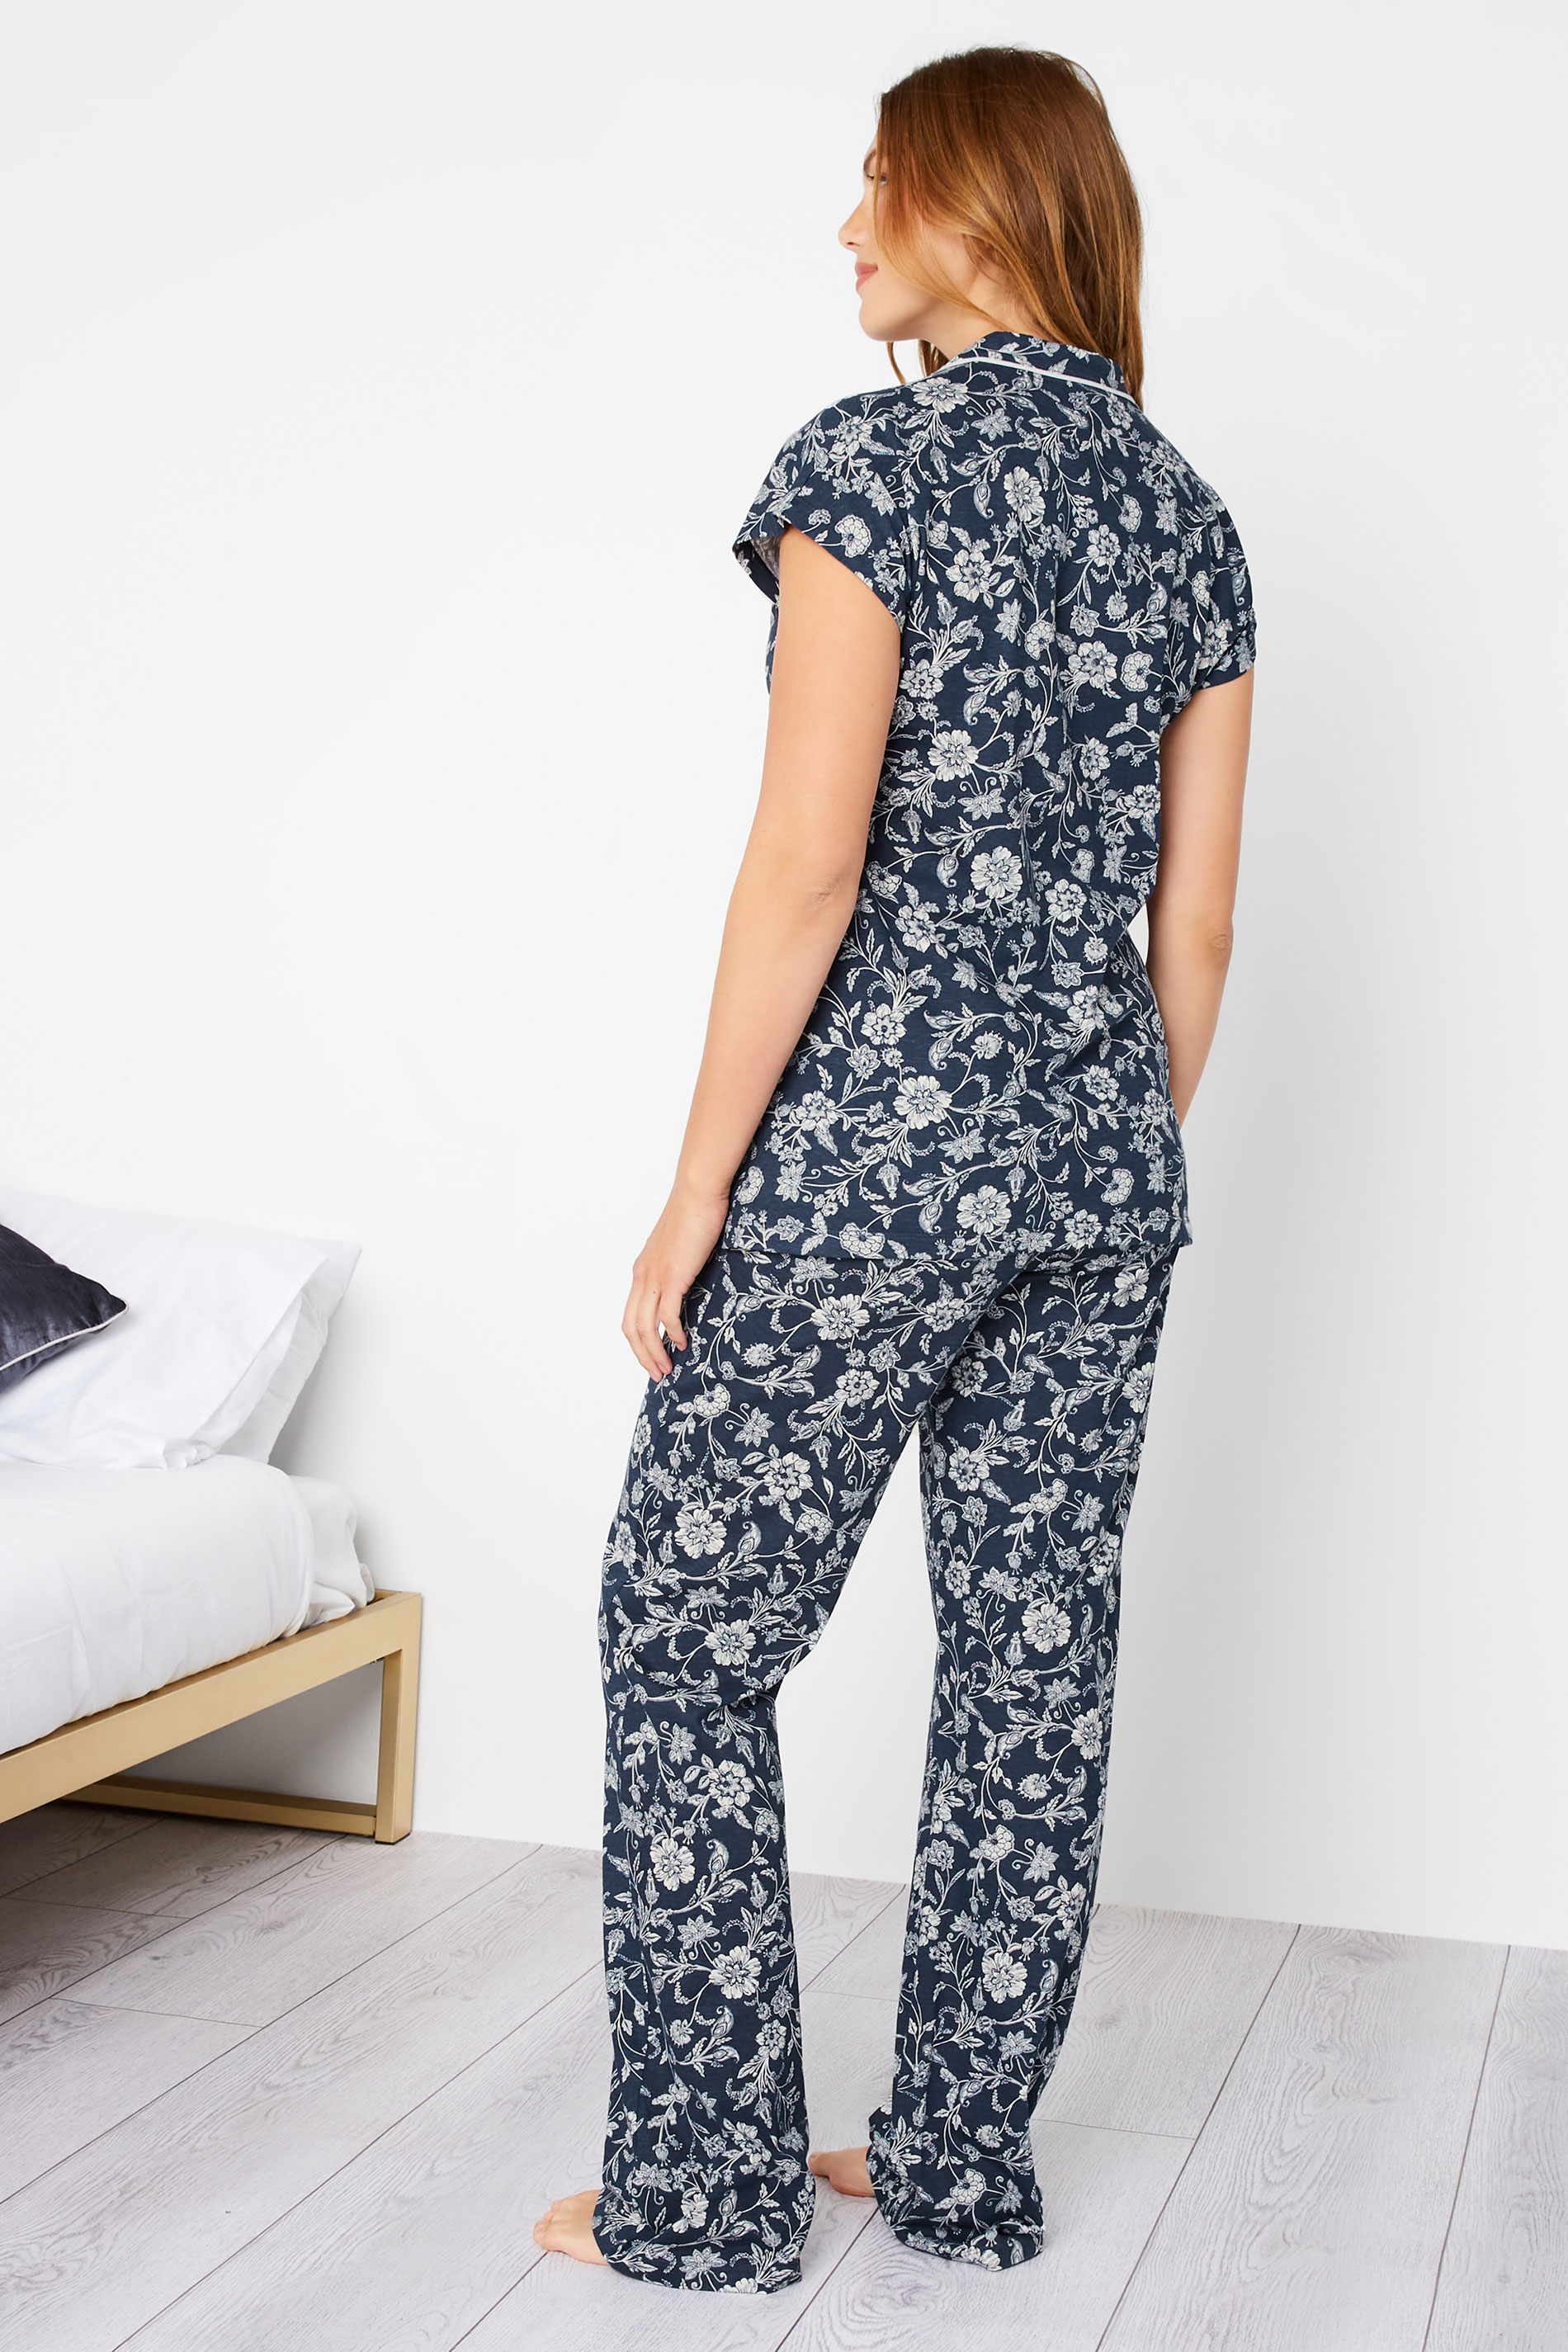 LTS Tall Women's Blue Stencil Floral Print Pyjama Set | Long Tall Sally 3